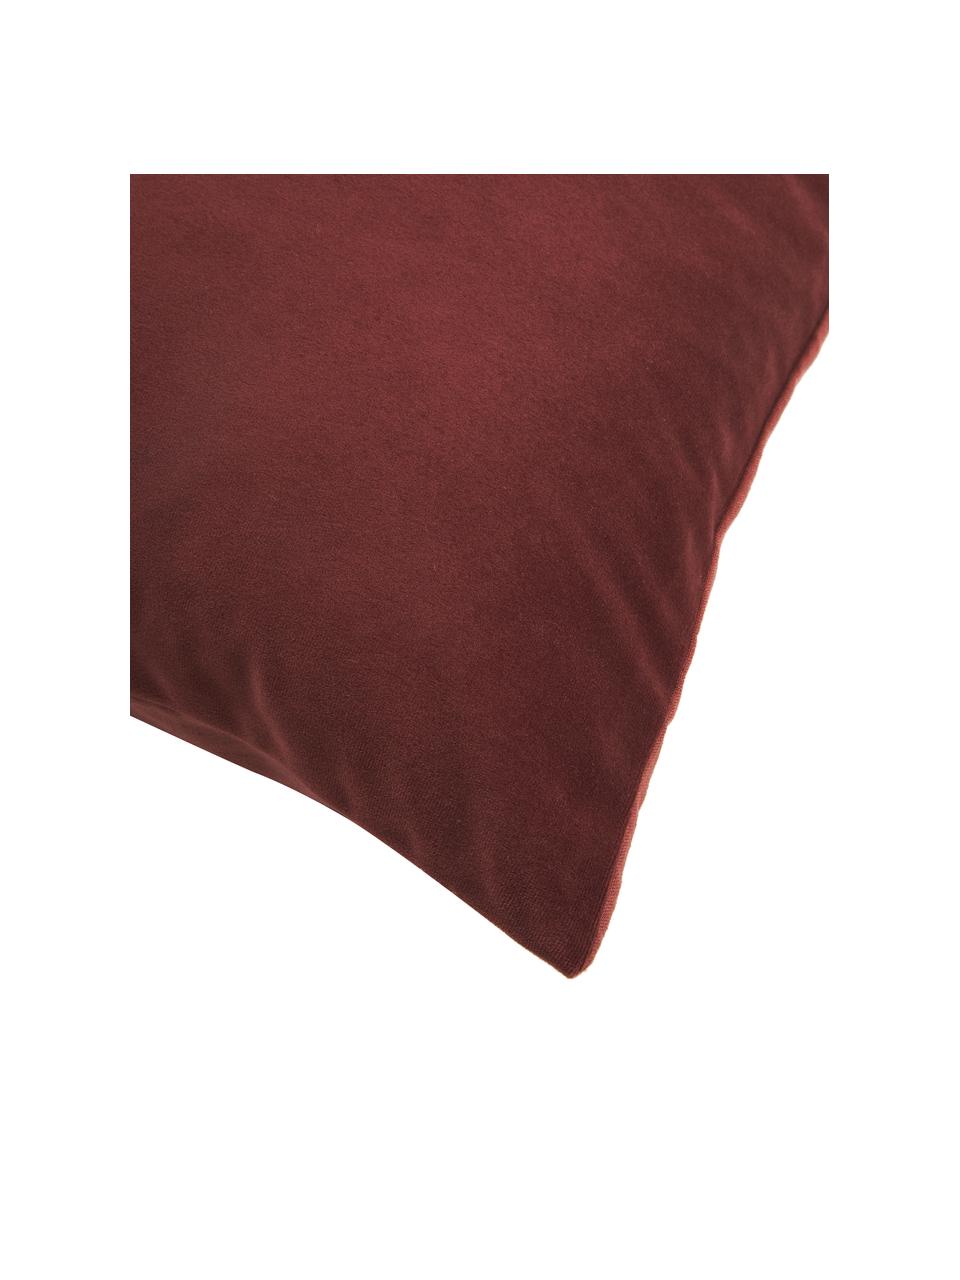 Poszewka na poduszkę z aksamitu i lnu Adelaide, Czerwony, blady różowy, S 45 x D 45 cm